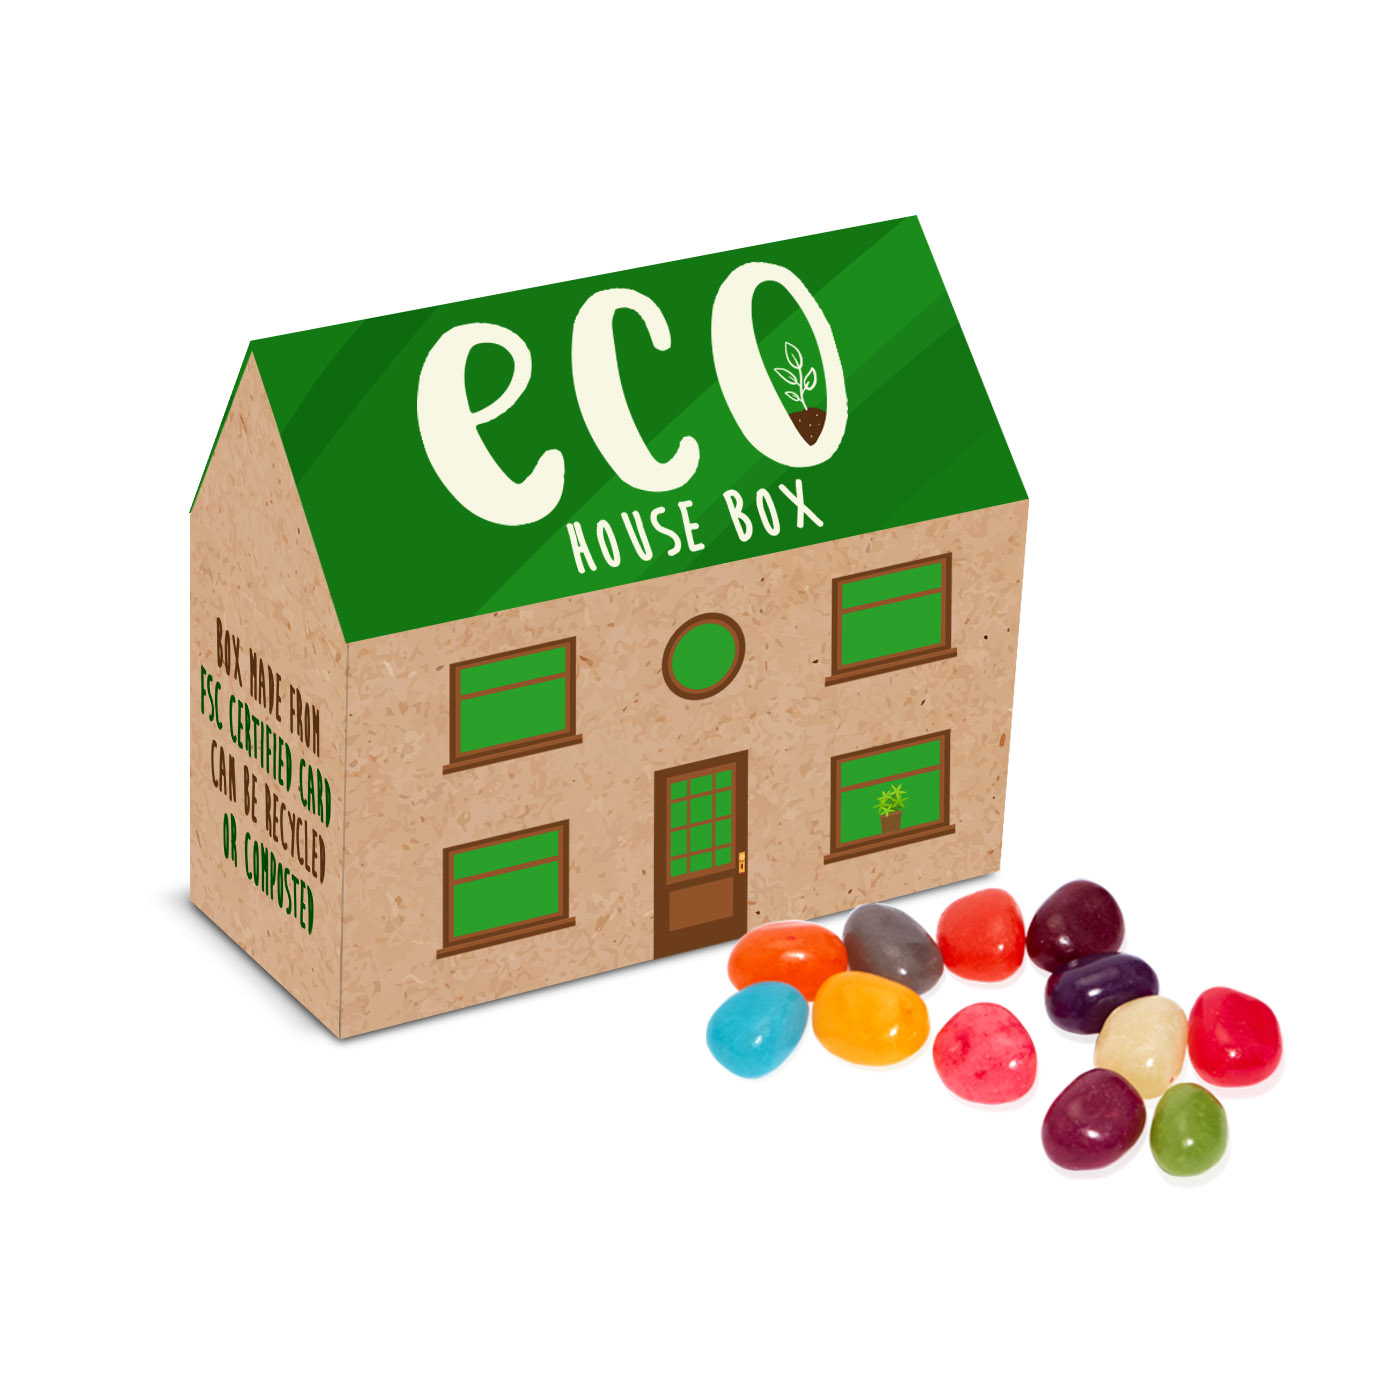 Eco Range - Eco House Box - Jelly Bean Factory®